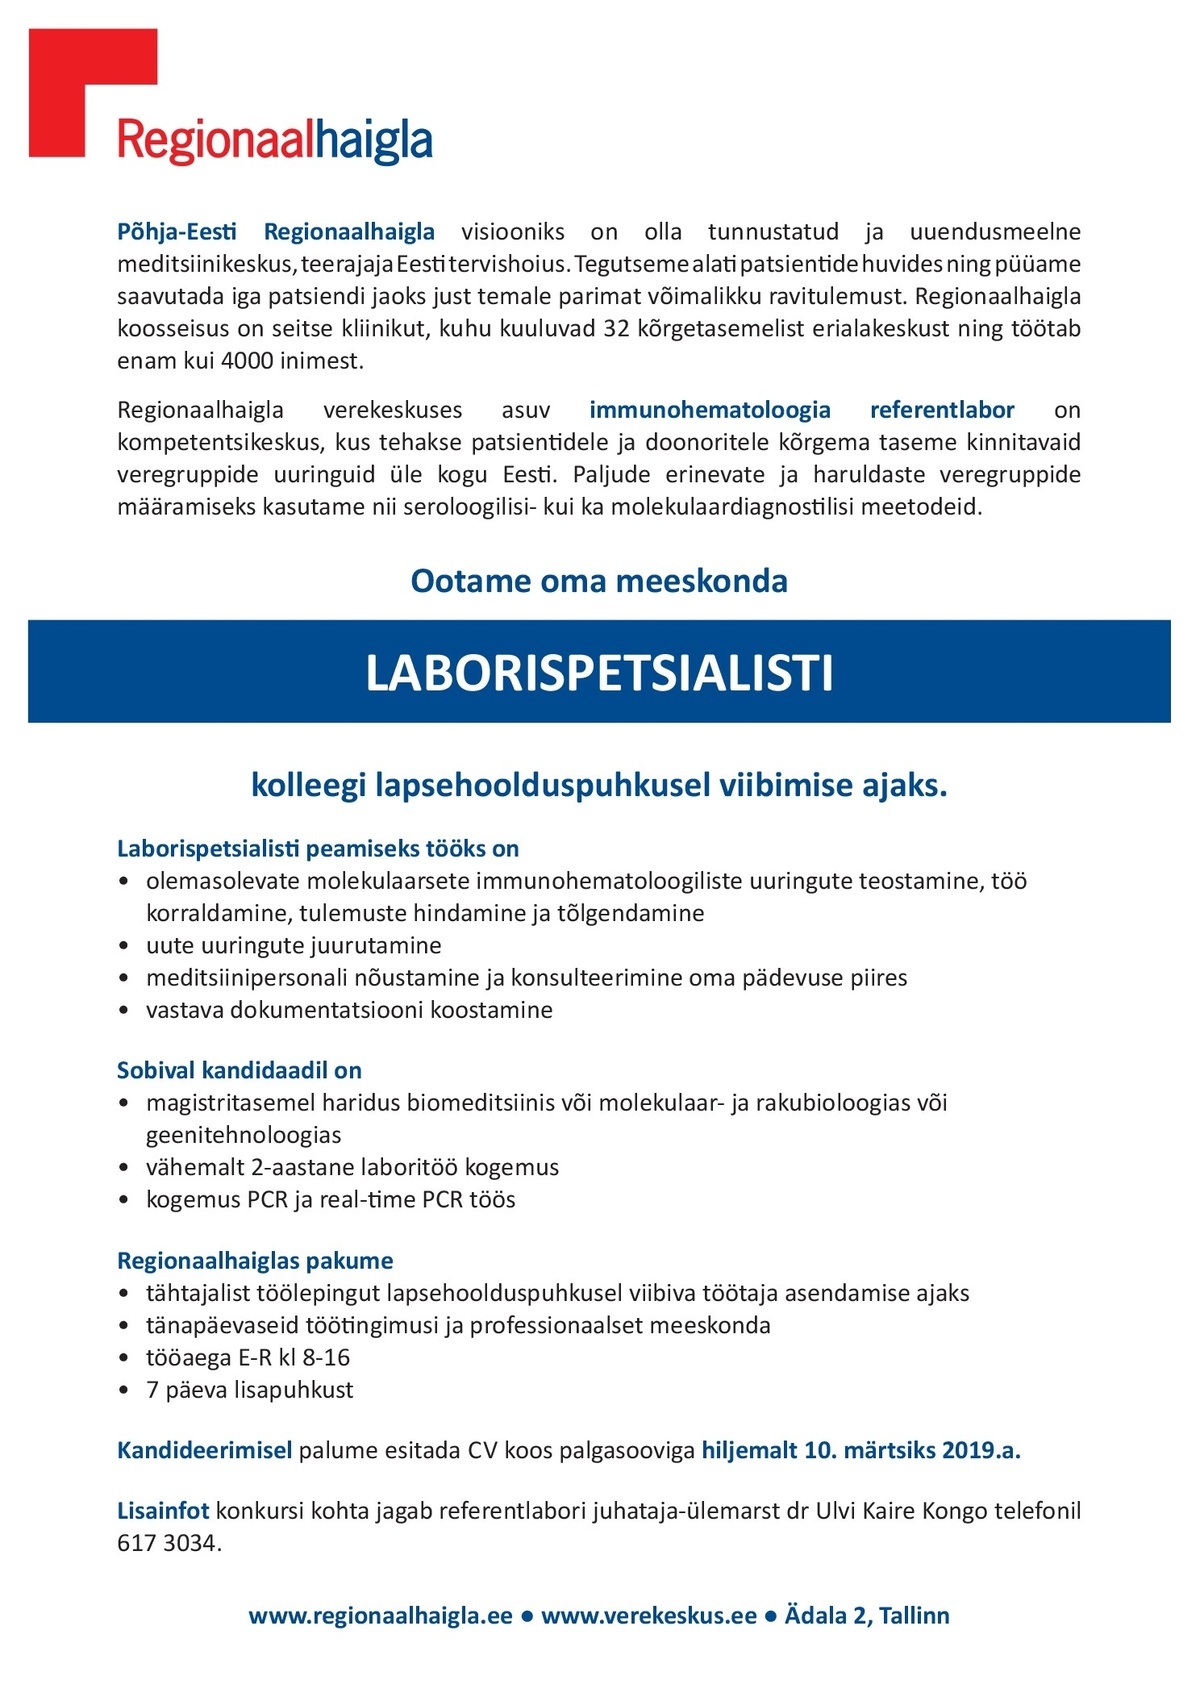 Põhja-Eesti Regionaalhaigla SA Laborispetsialist 